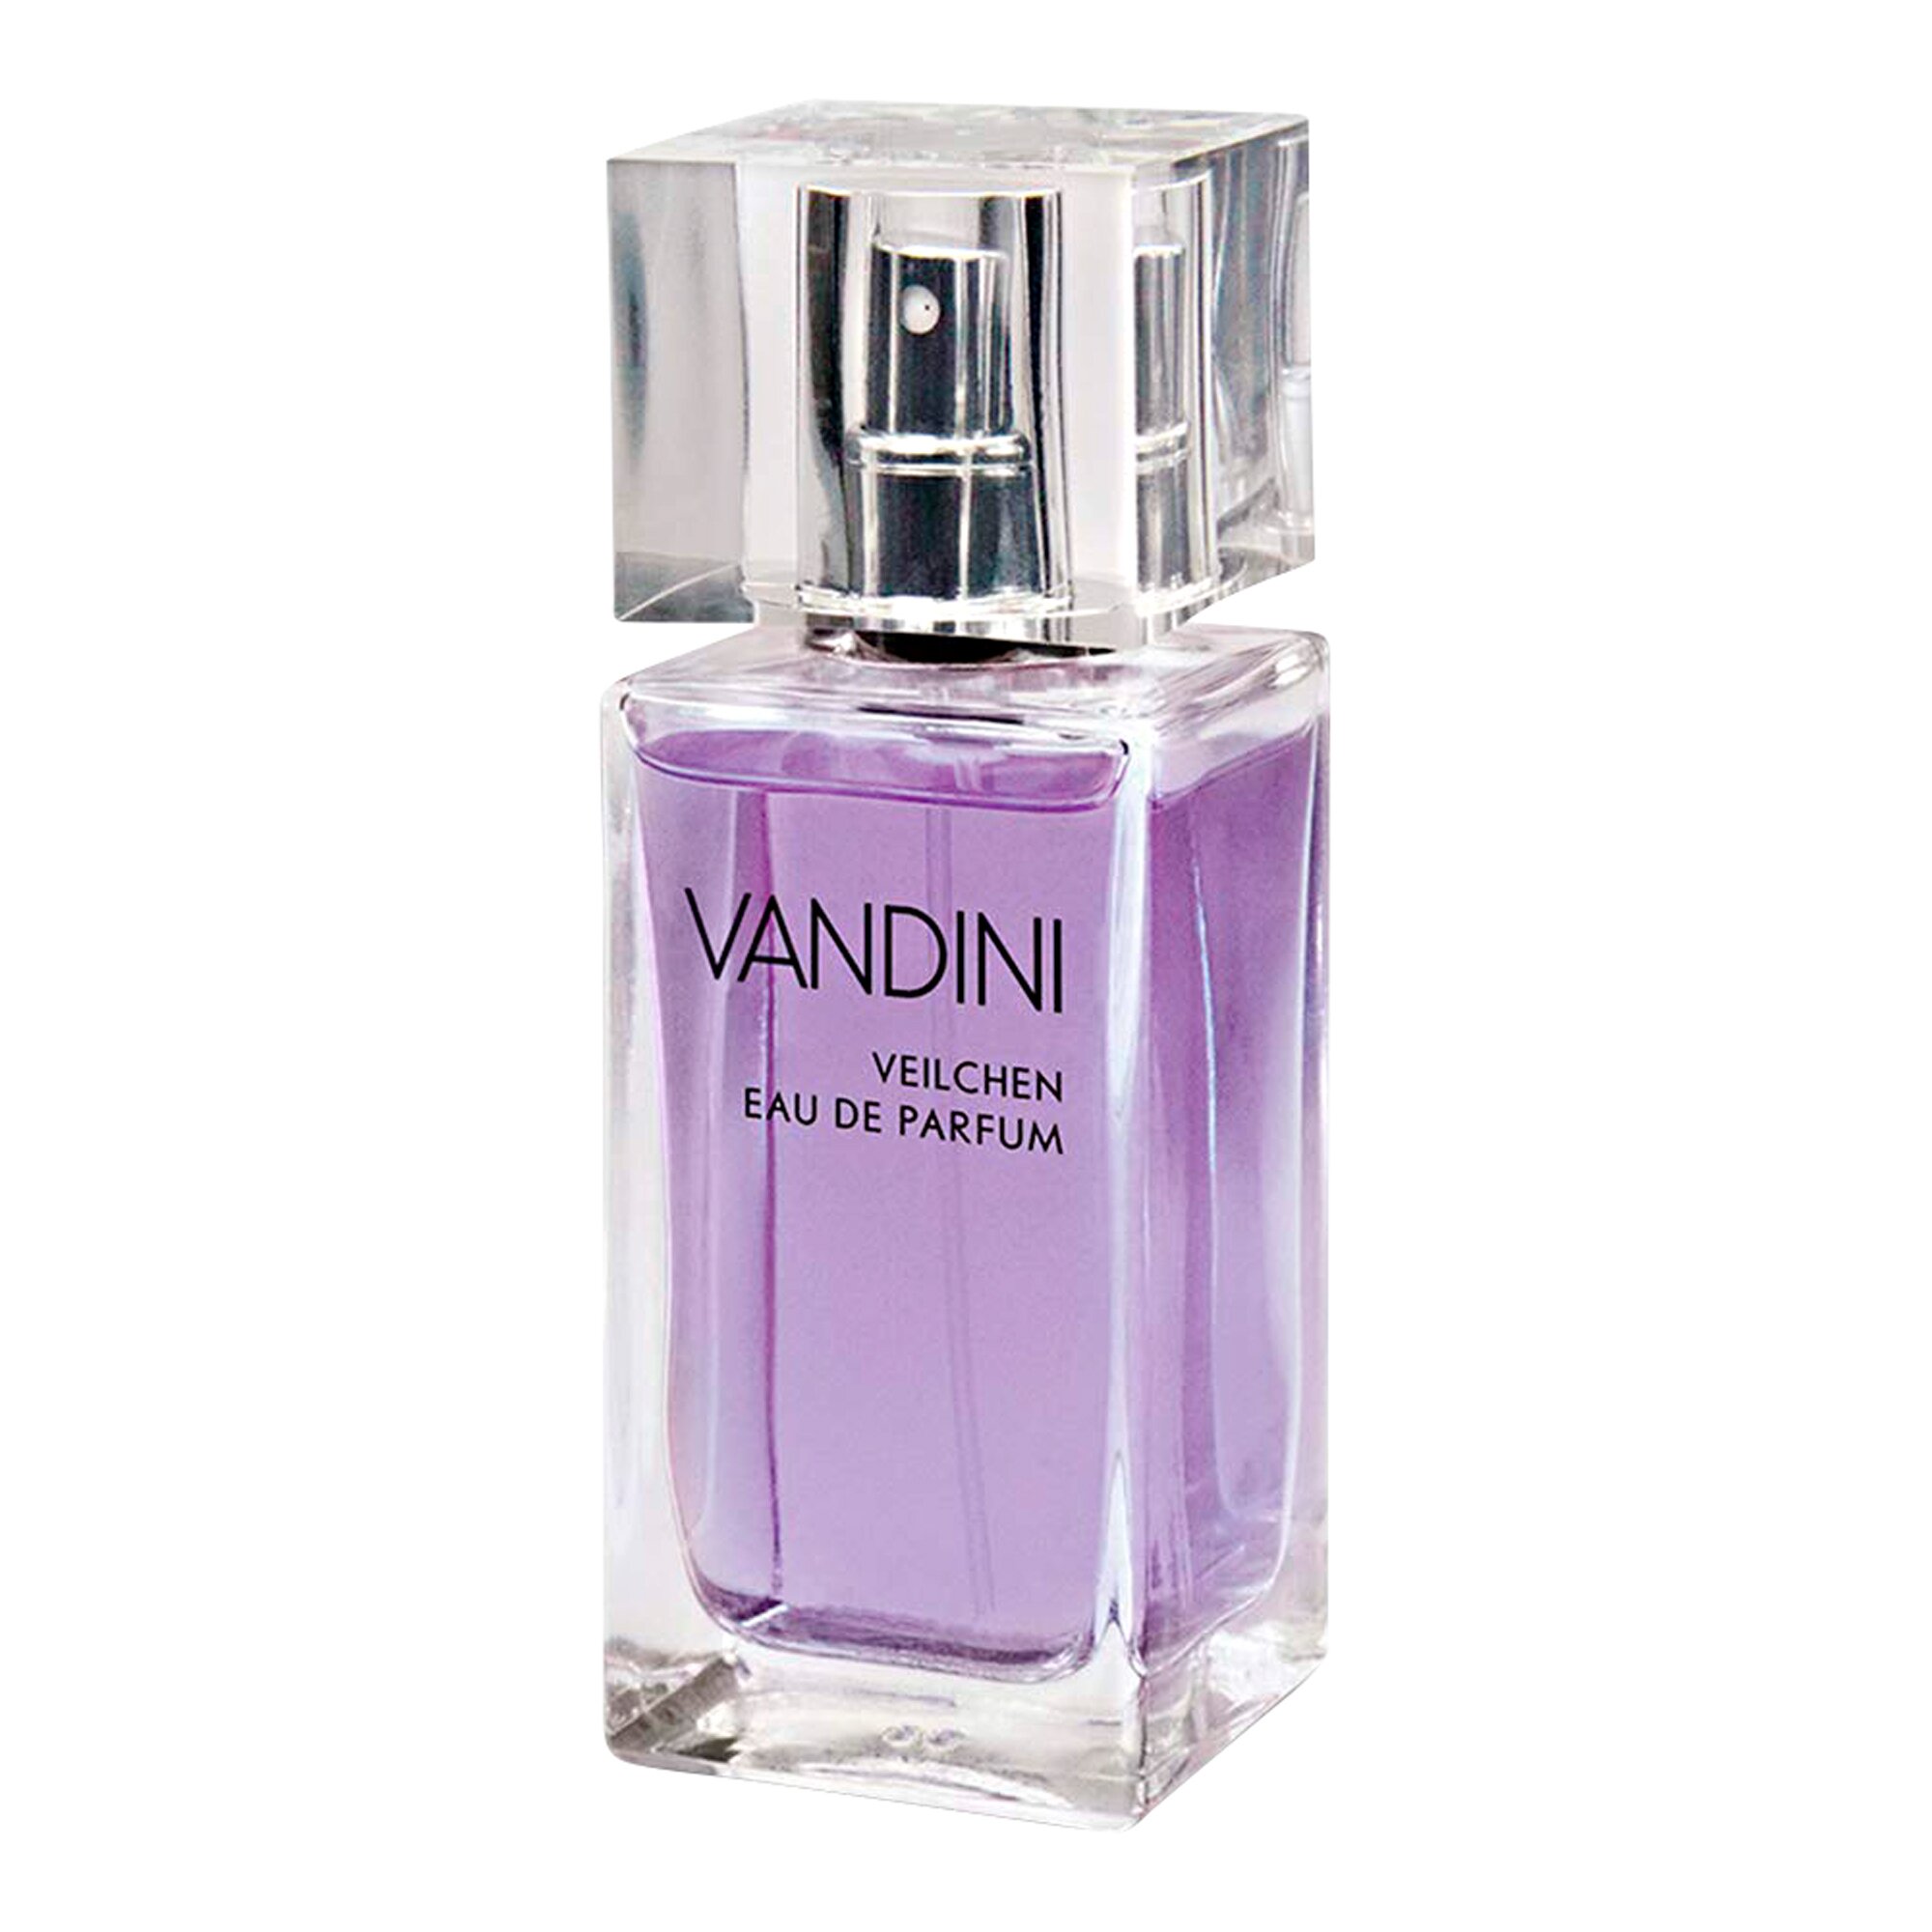 Image of Eau de Parfum "Veilchen", 50 ml